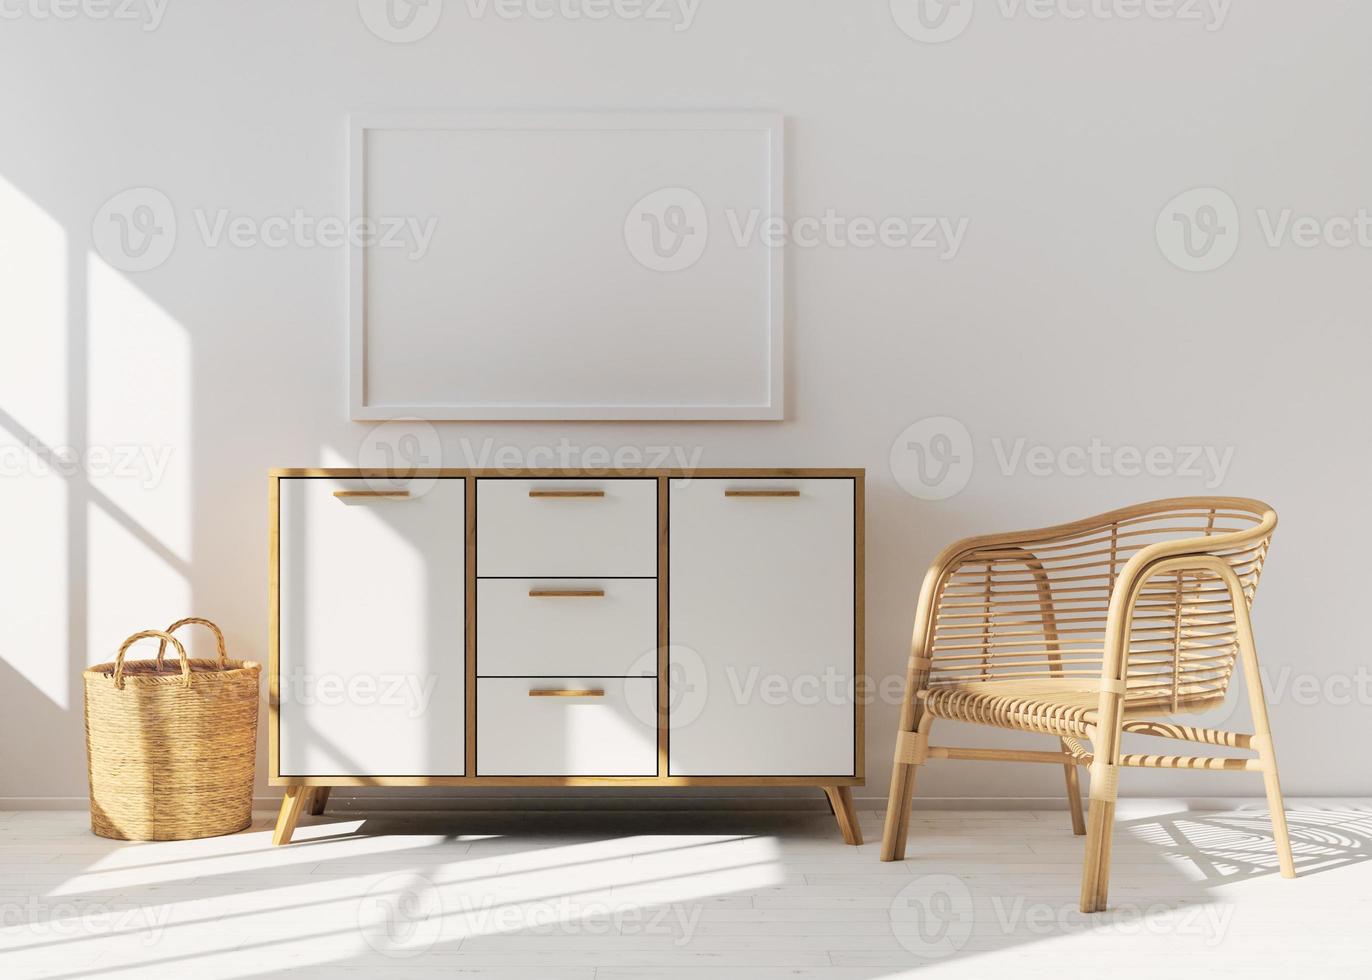 marco de imagen vacío en la pared blanca en la sala de estar moderna. maqueta interior en estilo escandinavo, boho. espacio libre, copia espacio para tu imagen. consola de madera y sillón de ratán. representación 3d foto